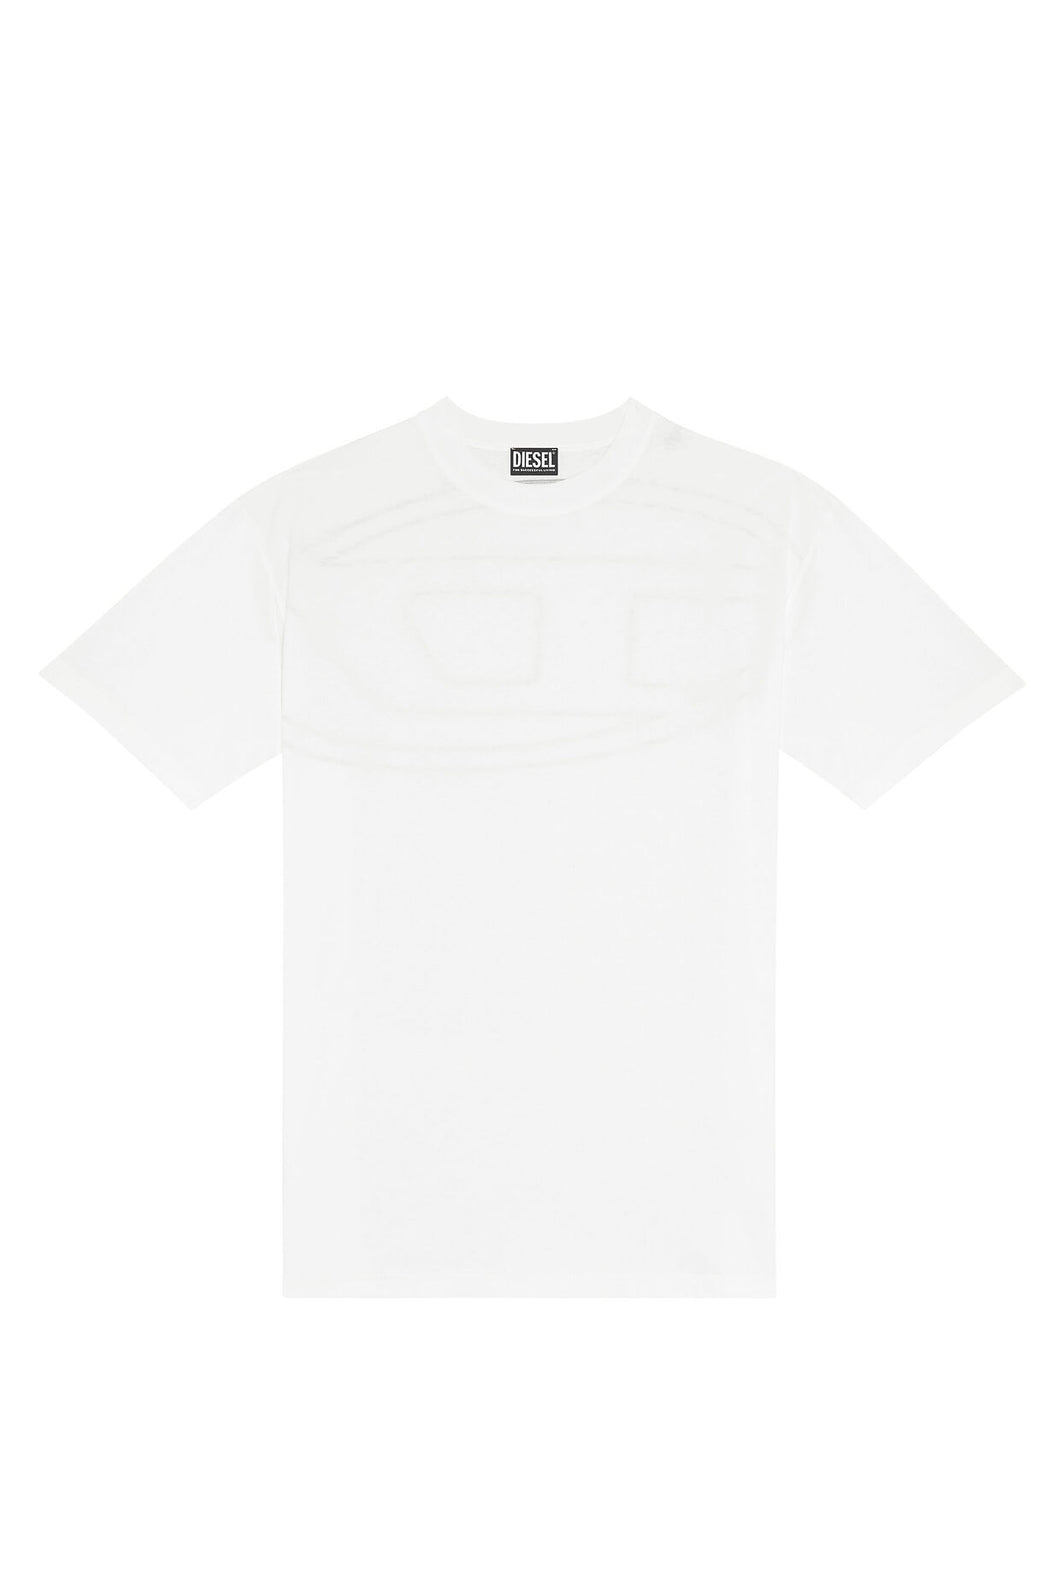 T-shirt Diesel boggy white